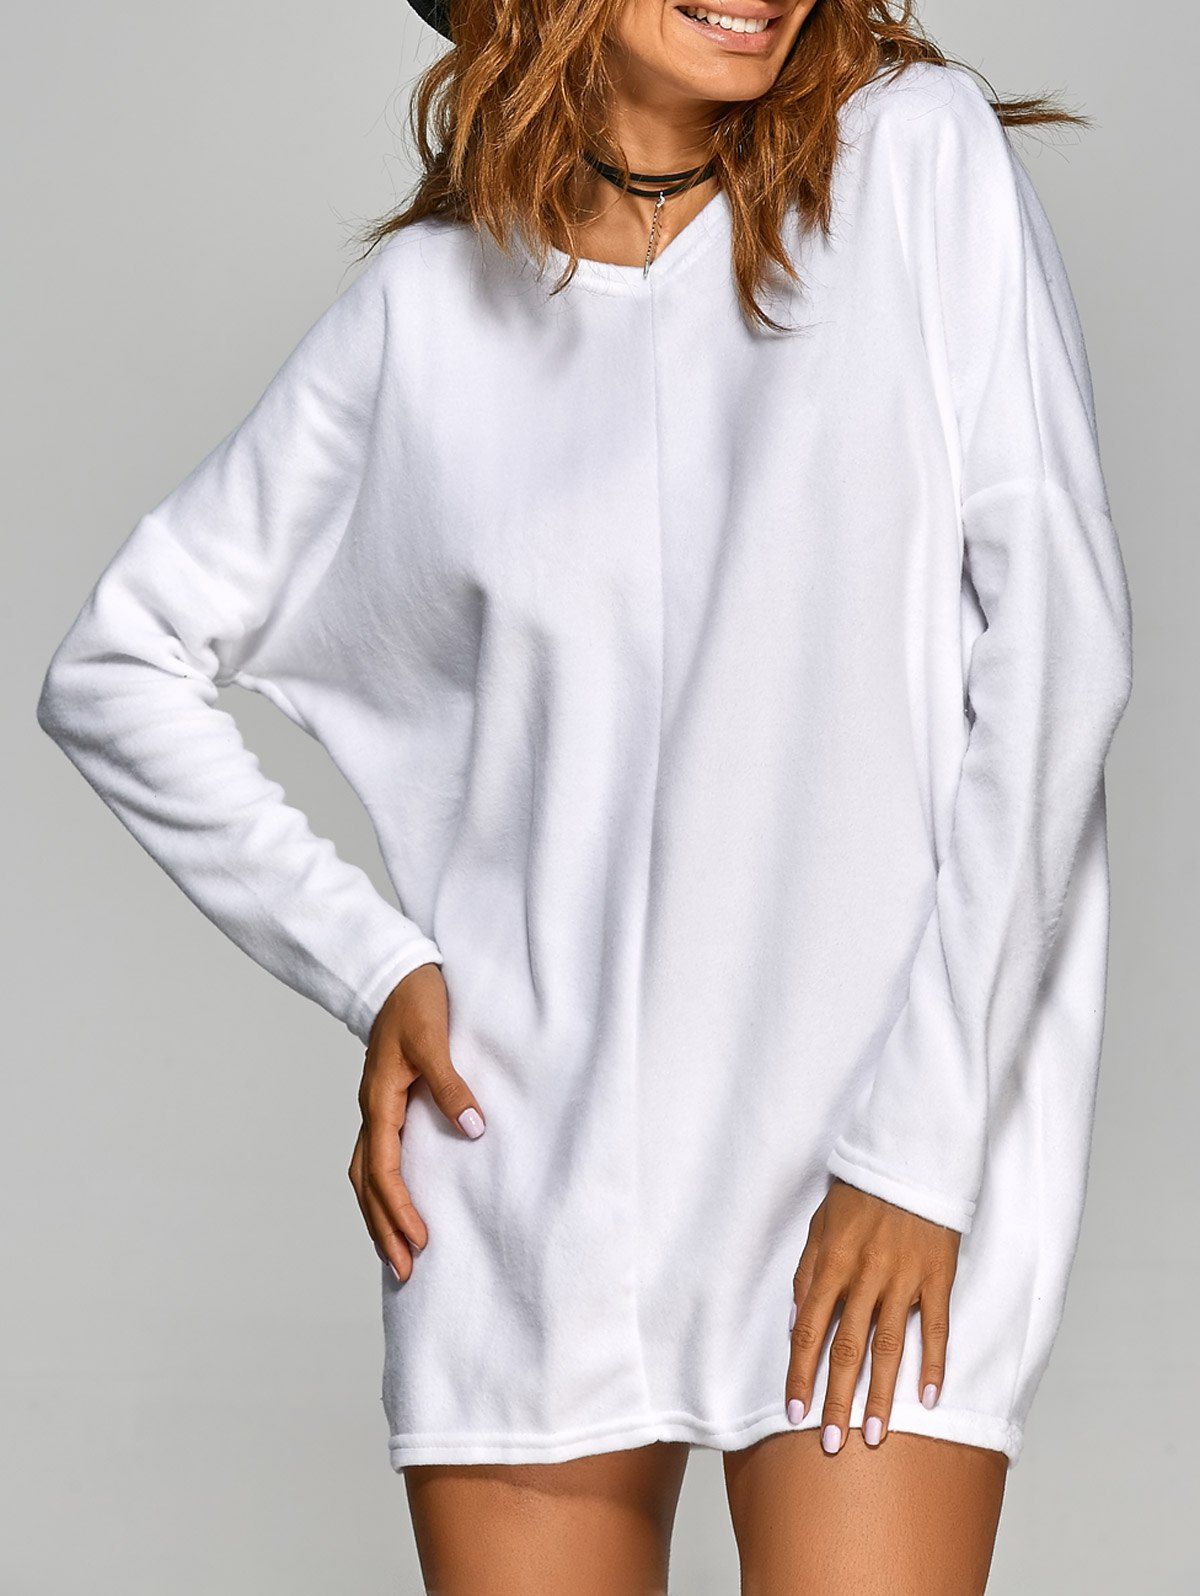 Short Plain V Neck Long Sleeve Mini Casual Tunic Dress - WHITE L